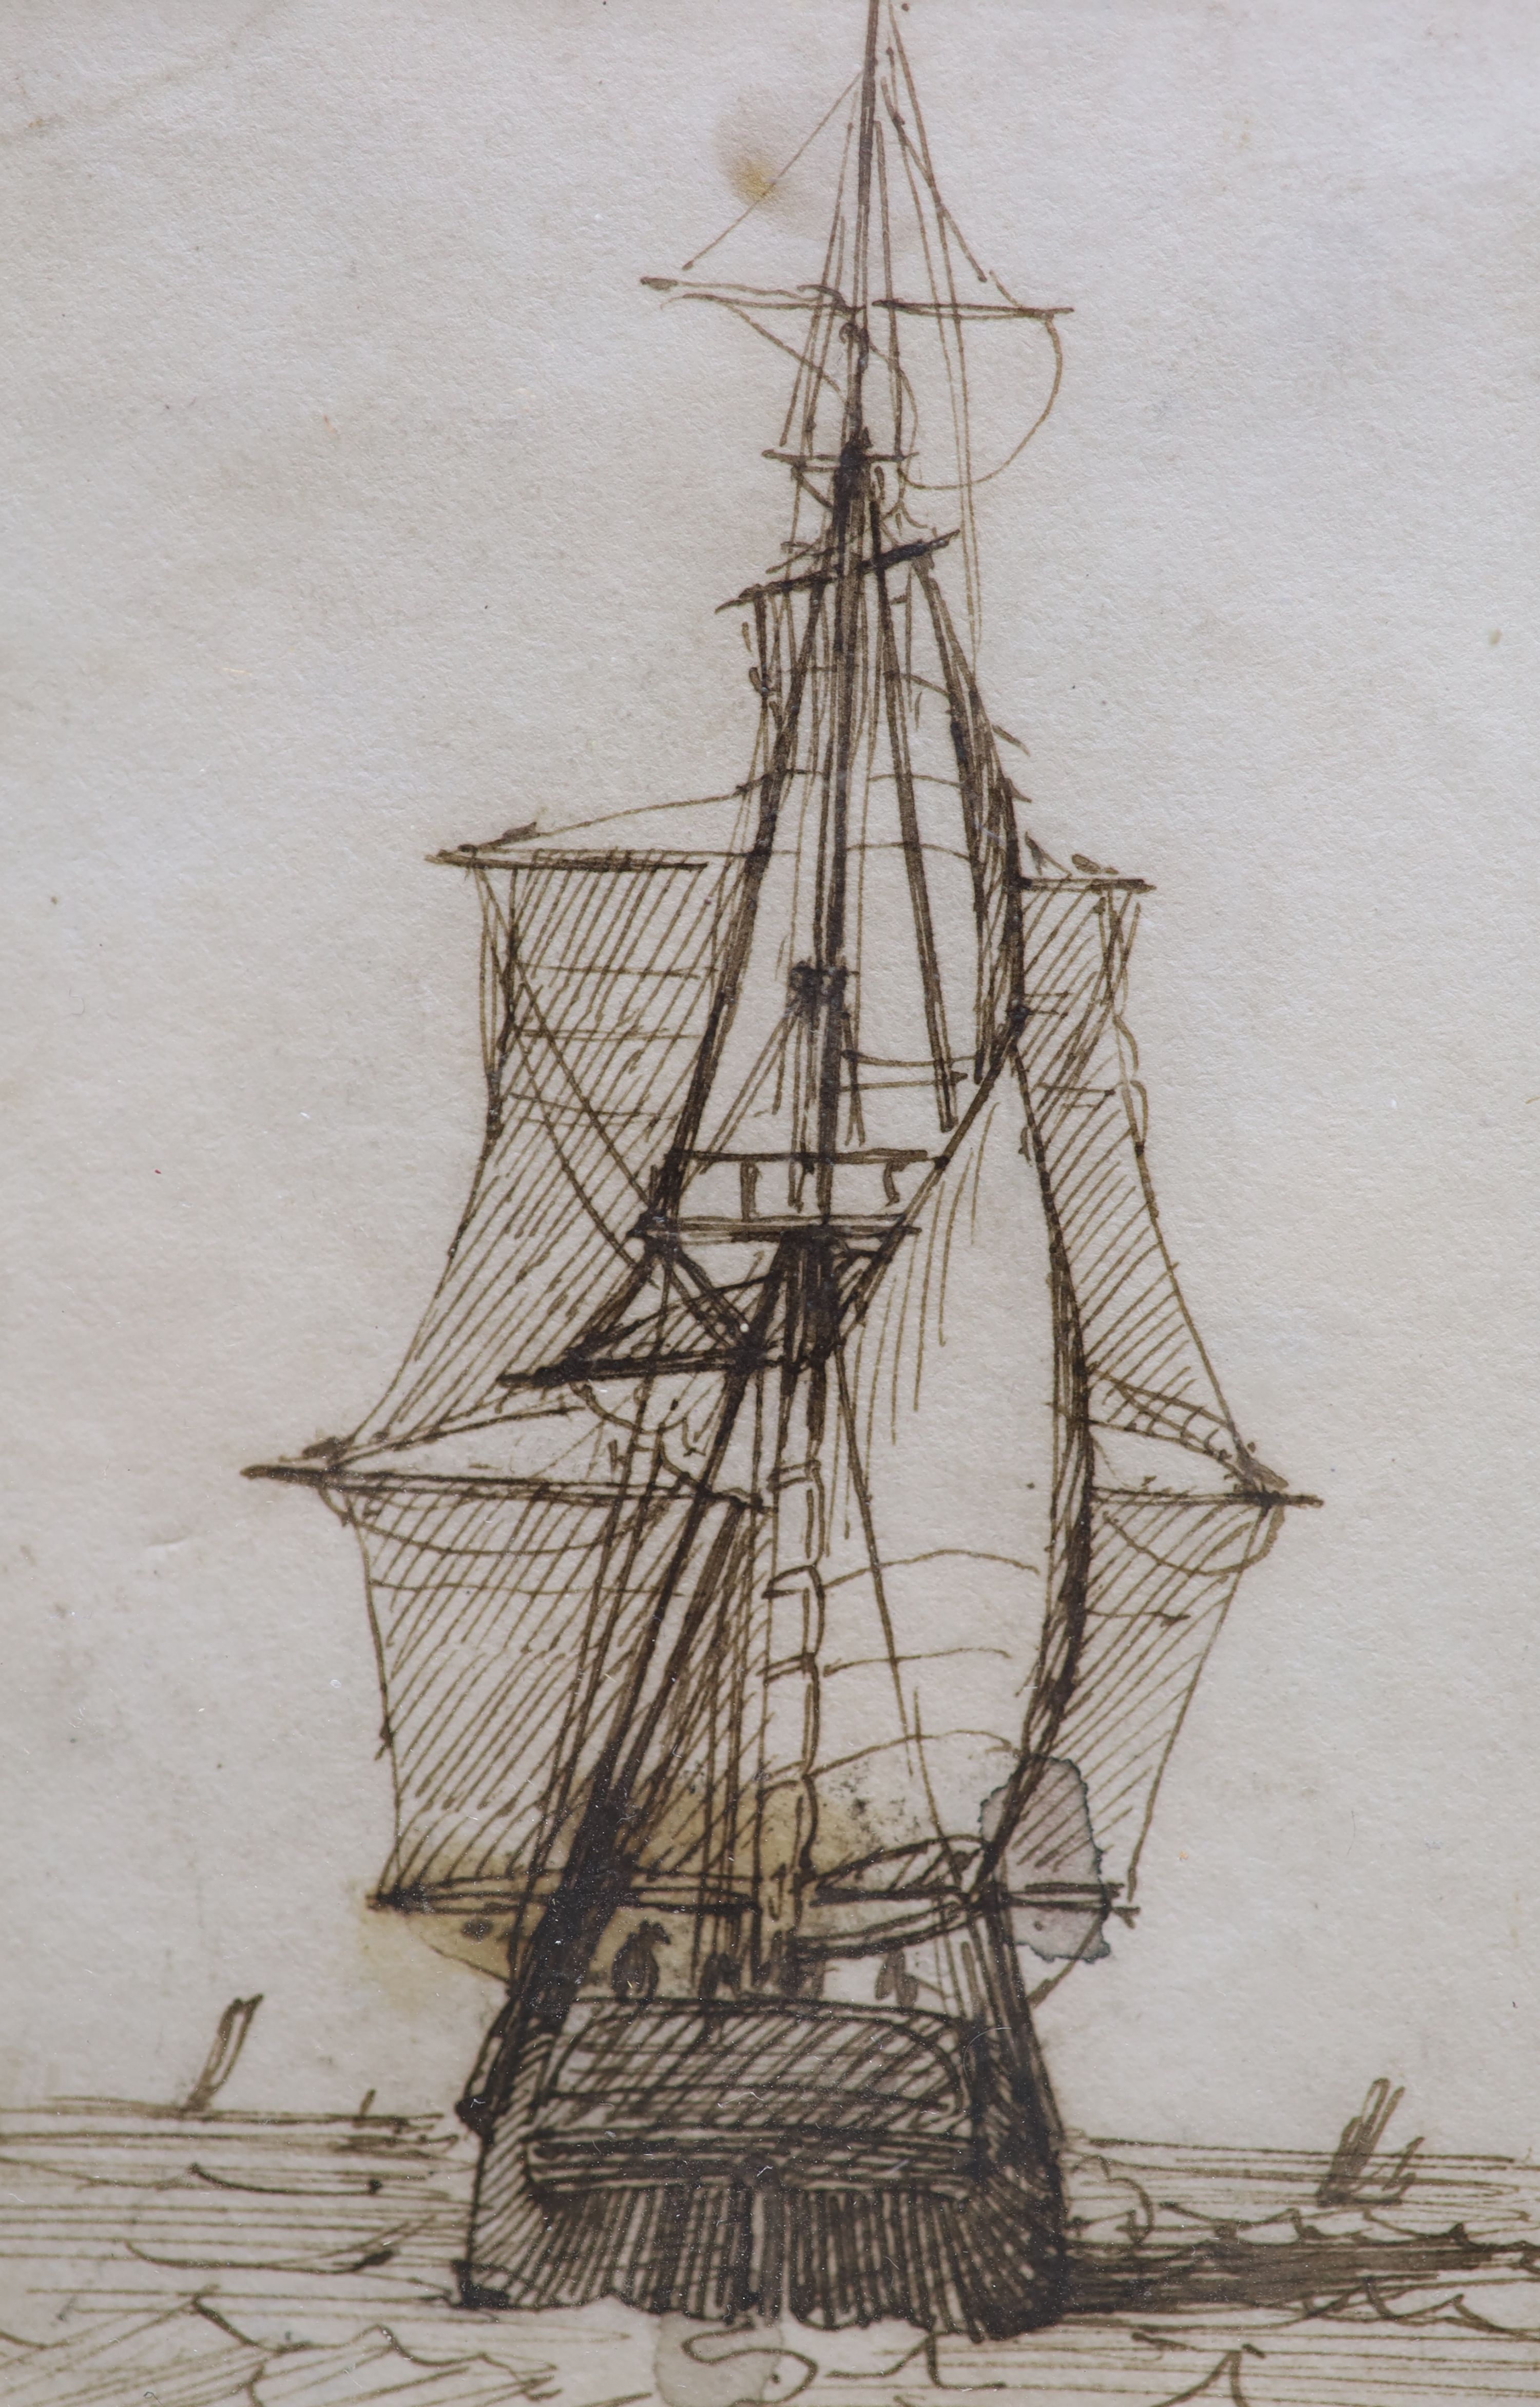 Richard Henry Nibbs (1816-1893), pen and ink drawing, Sailing ship at sea, 10 x 7cm